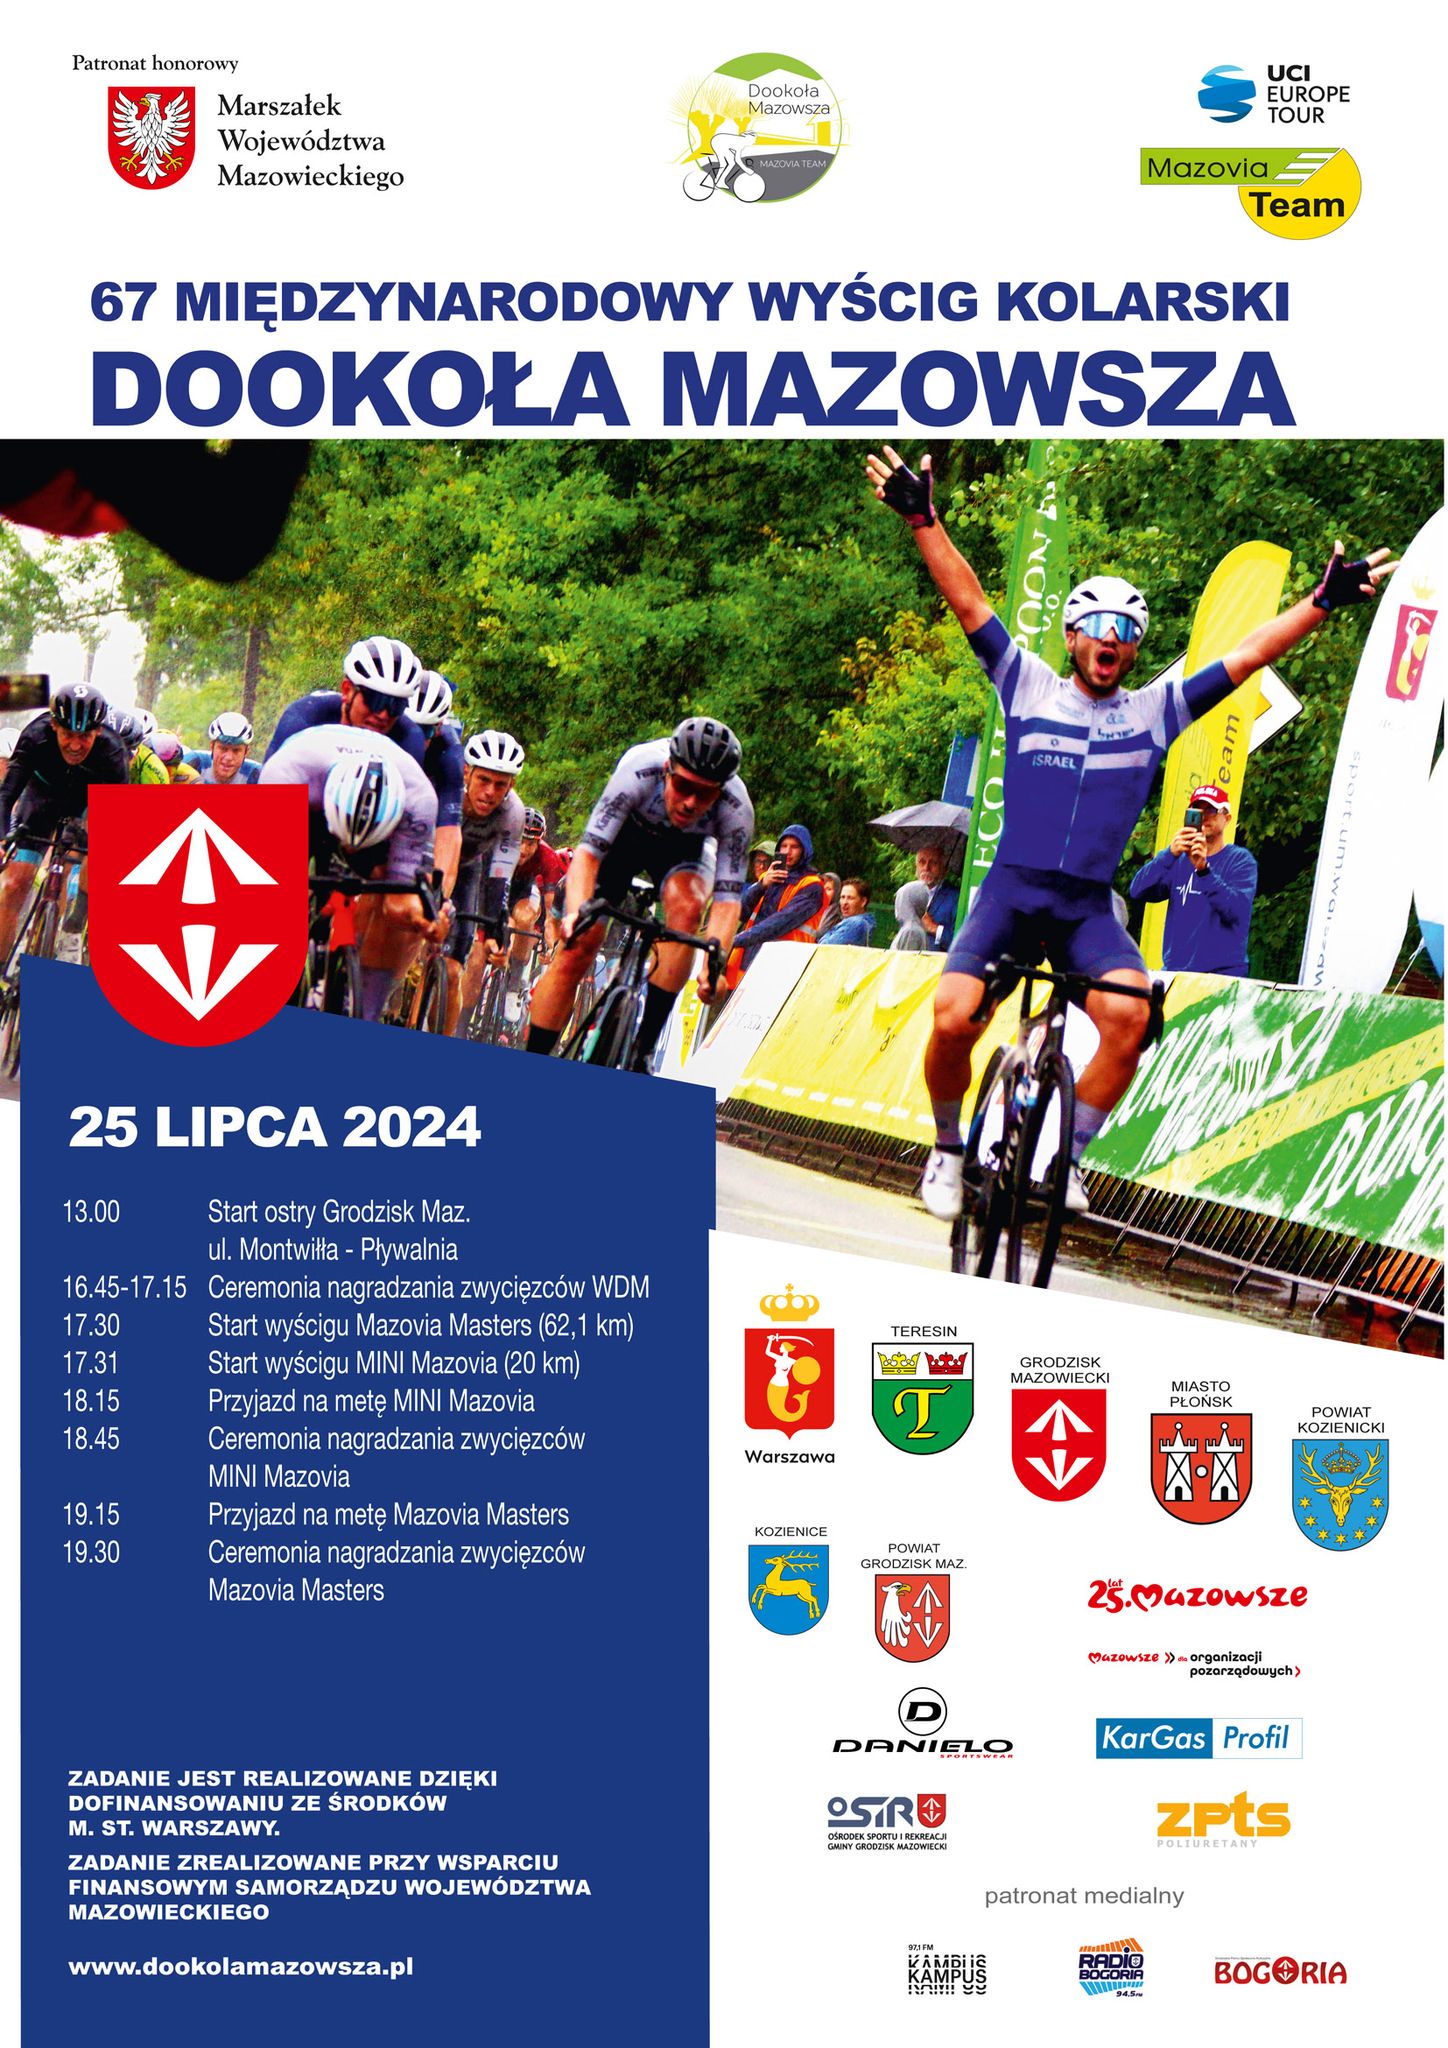 67 edycja Międzynarodowego Wyścigu Kolarskiego Dookoła Mazowsza